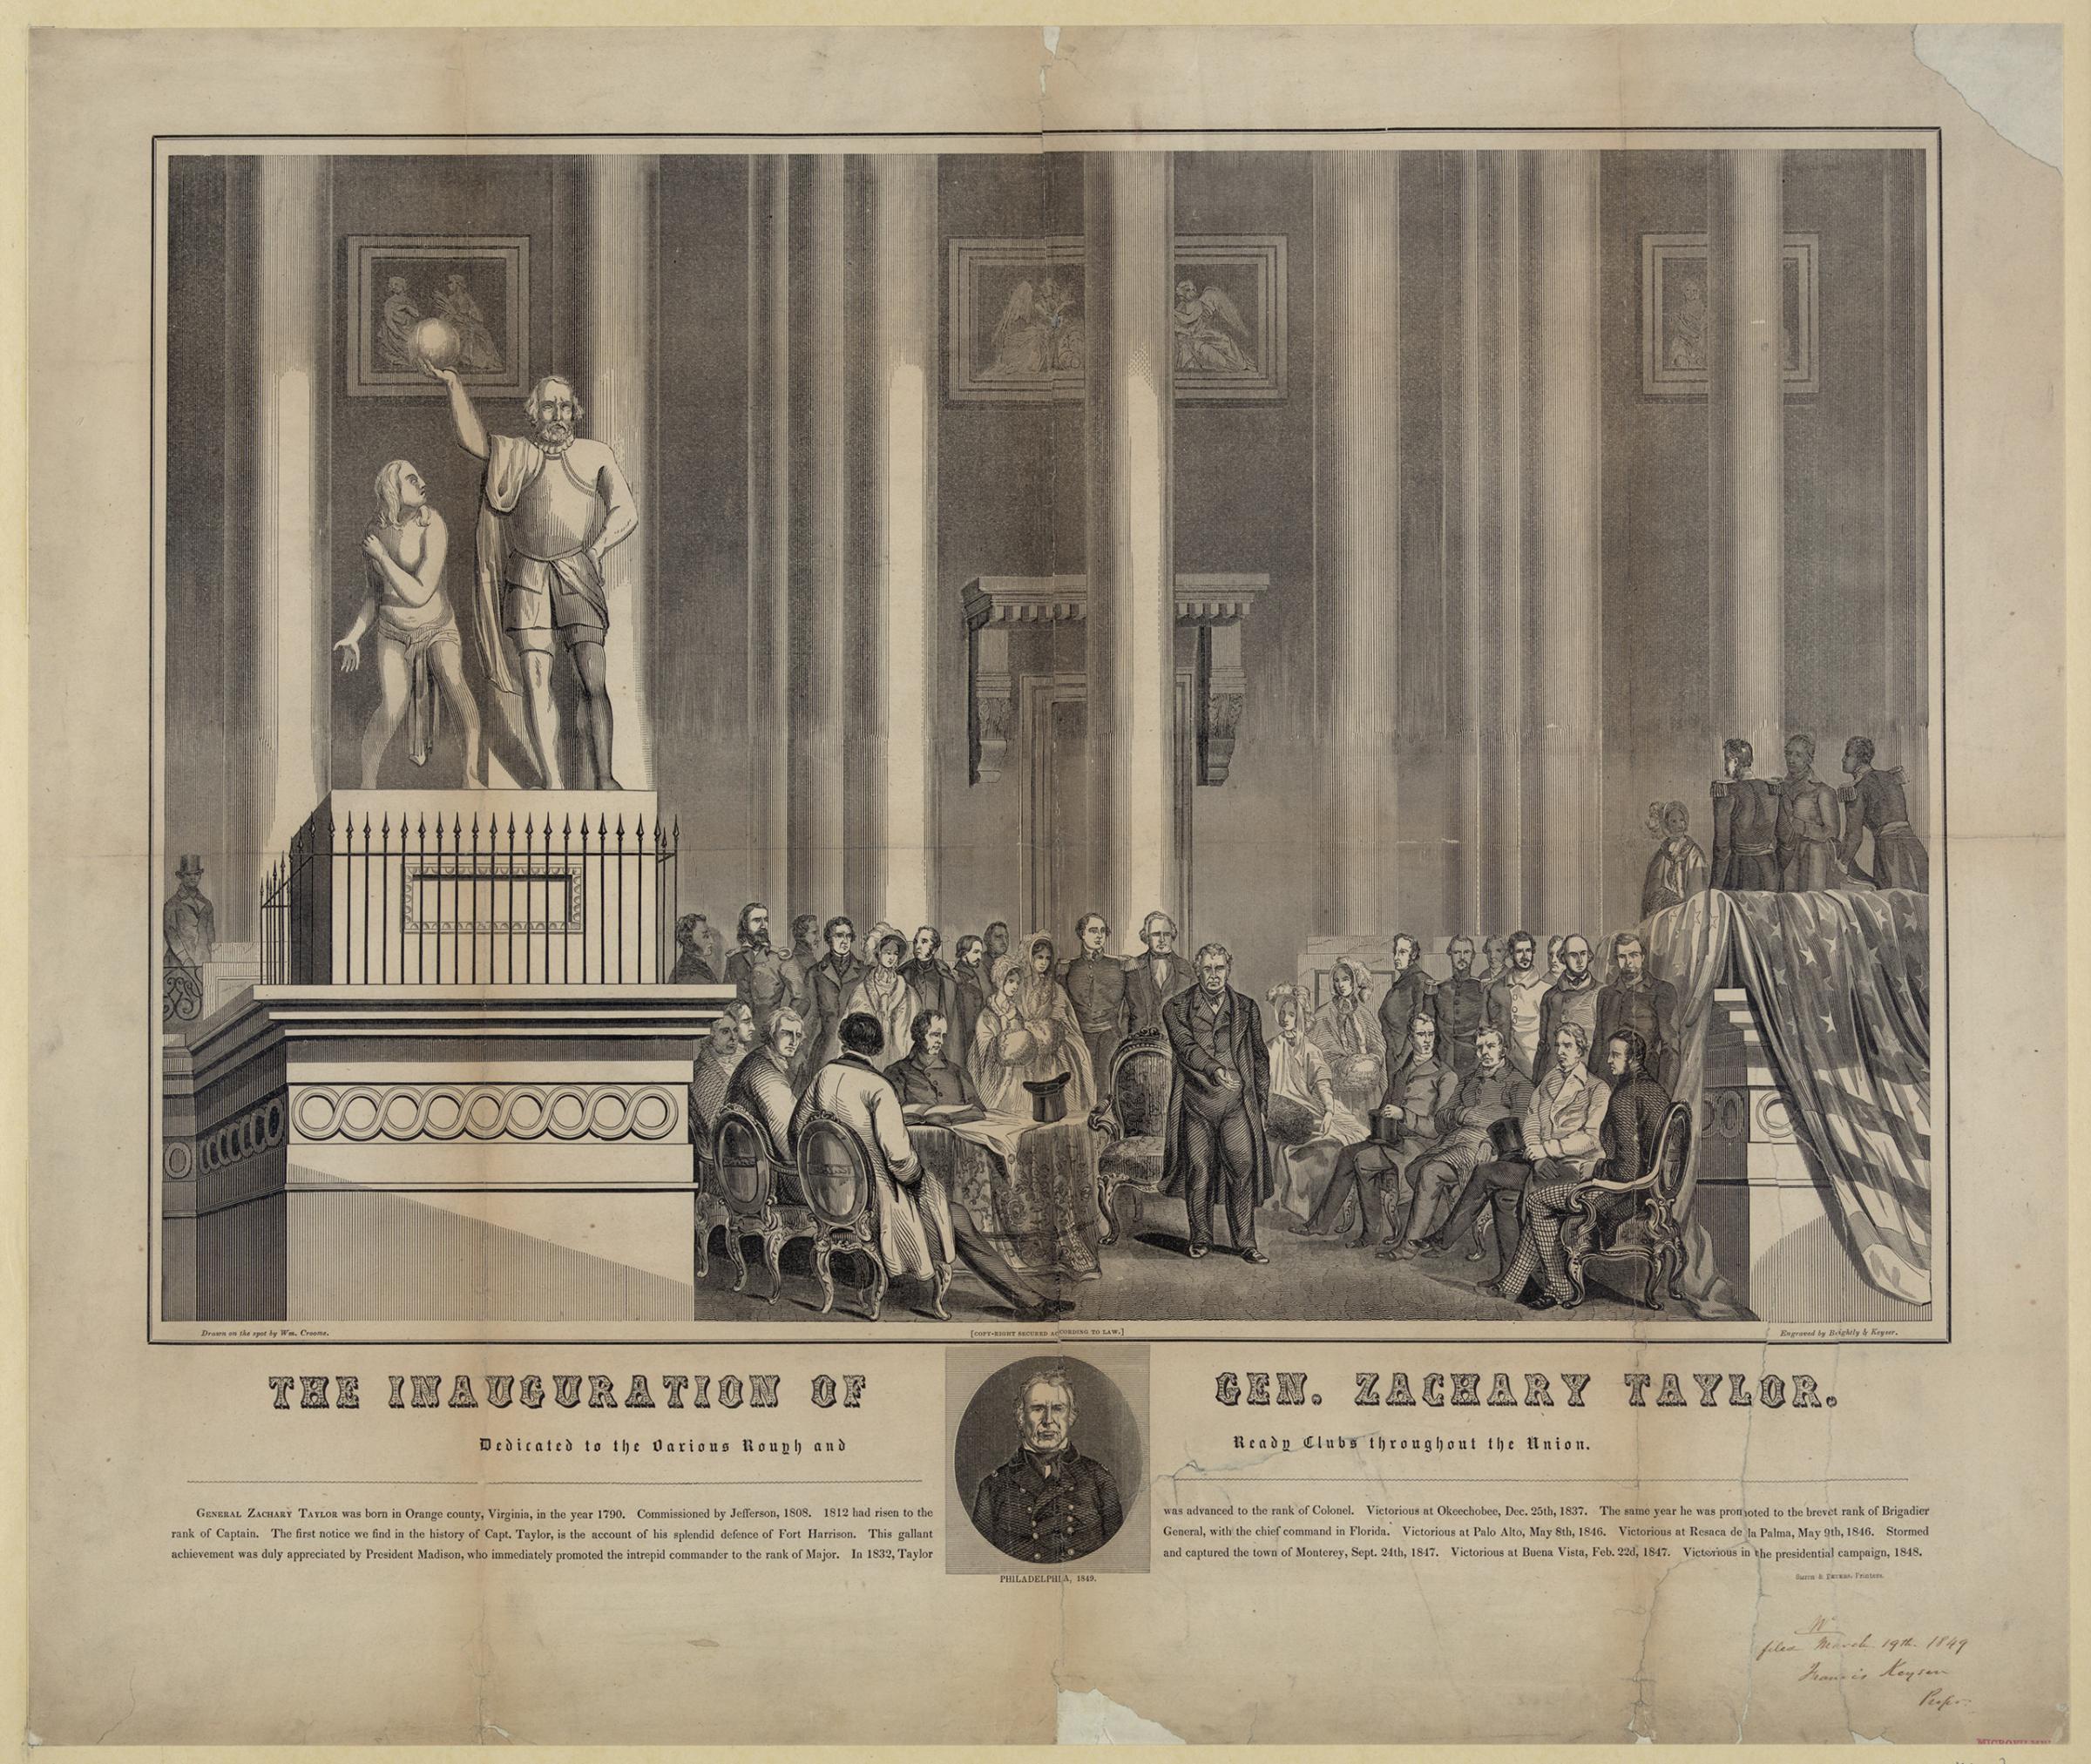 Inauguration of Zachary Taylor, 1849.